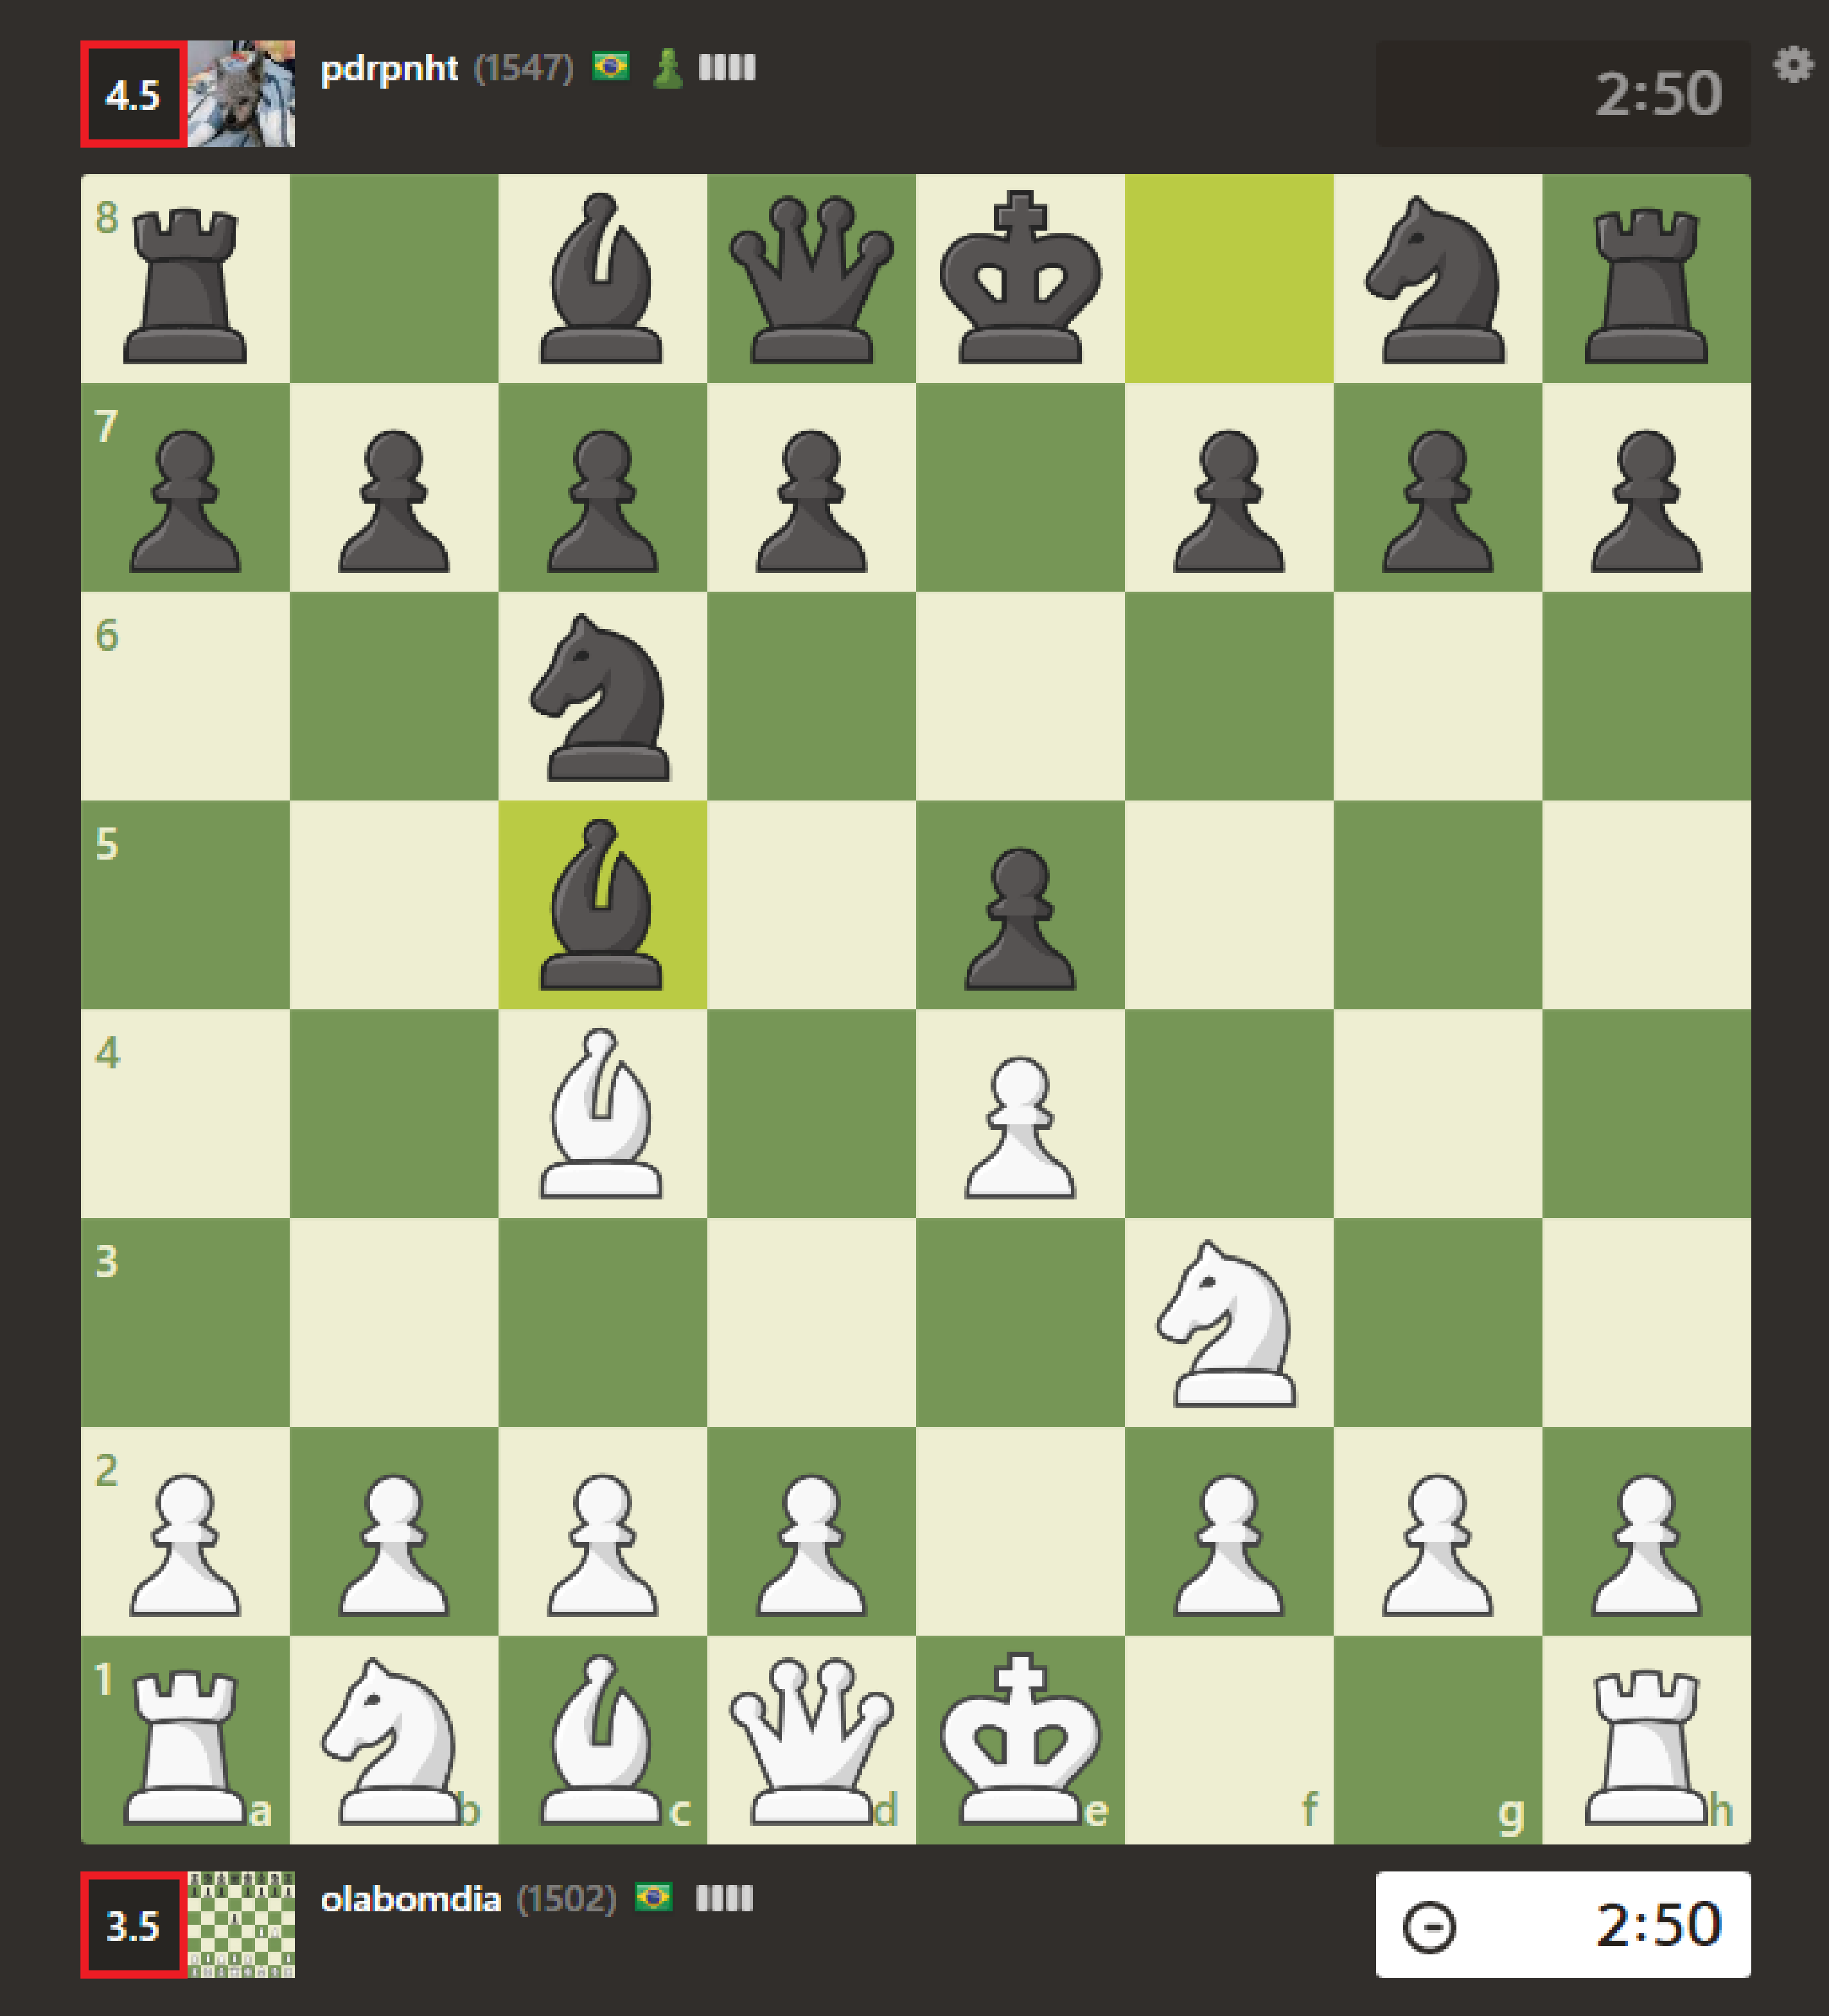 schach online gegeneinander spielen